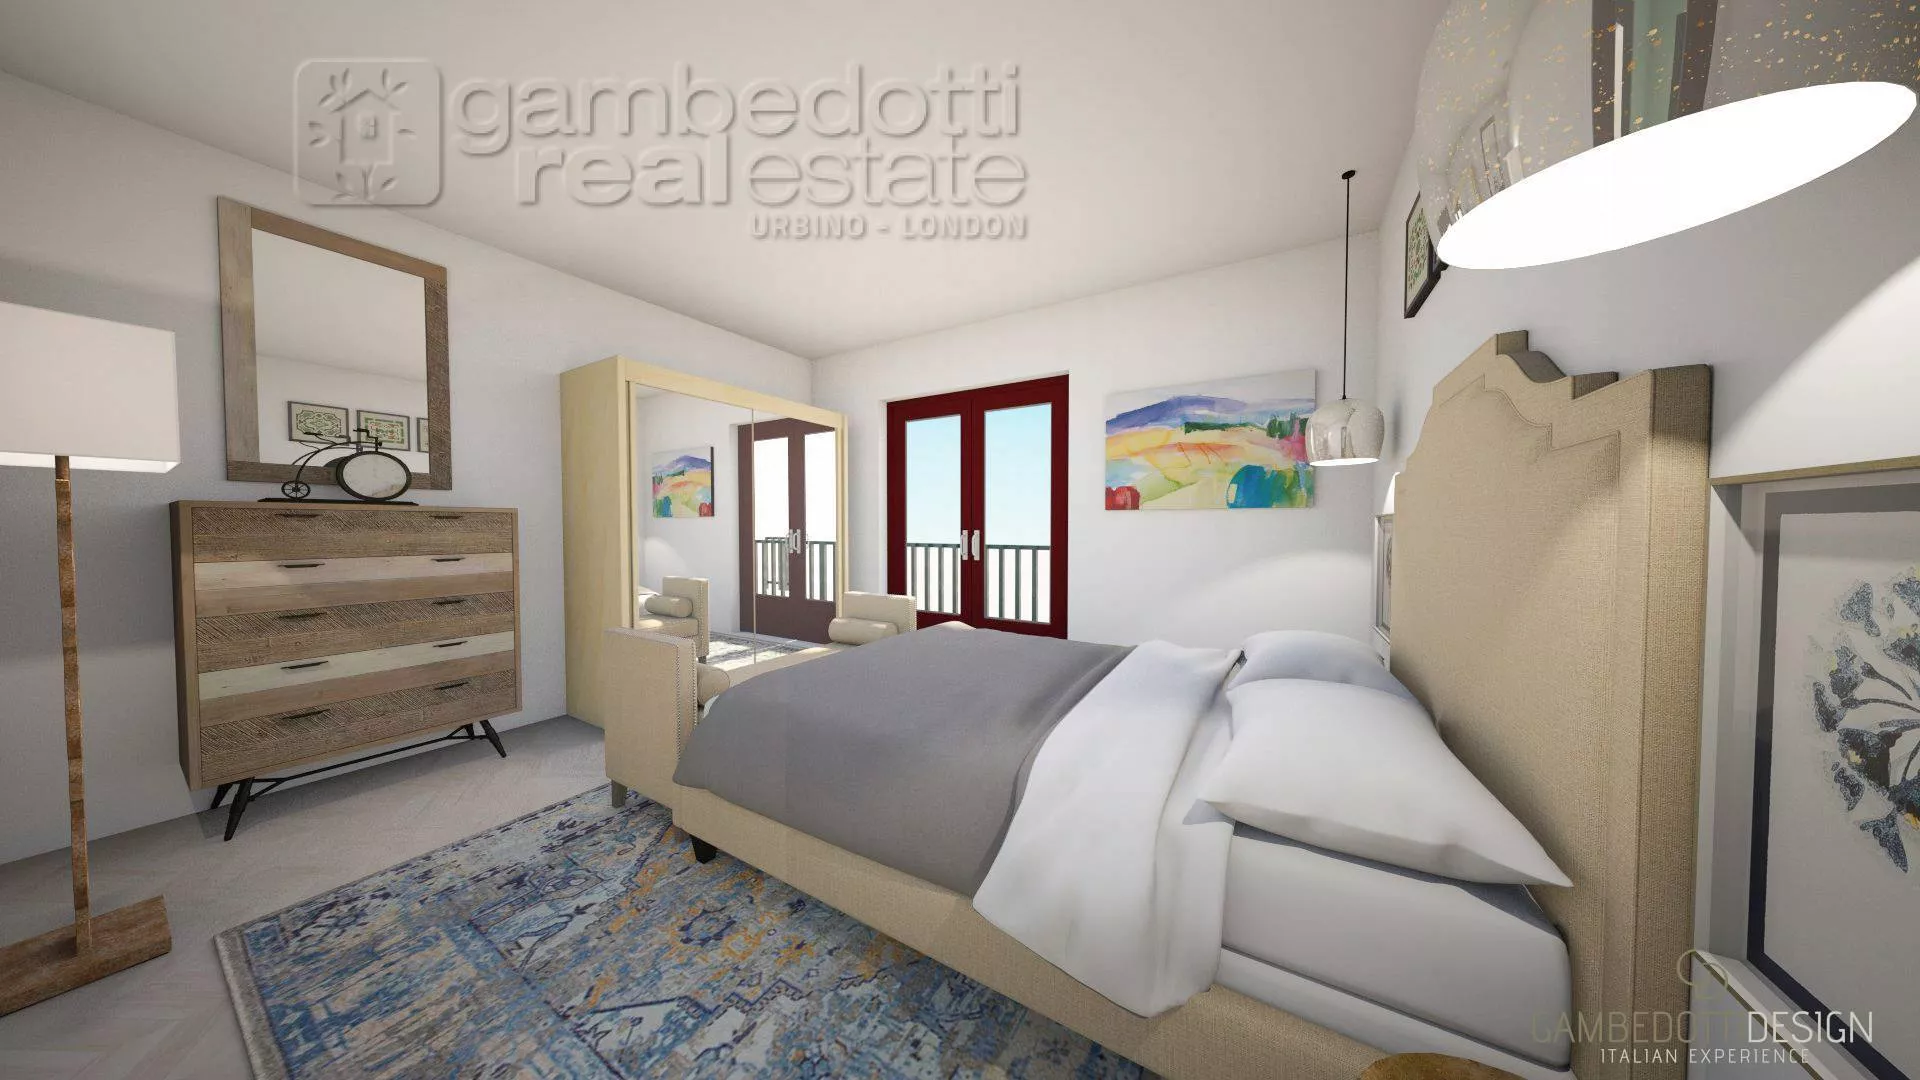 Immagine per Appartamento in vendita a Urbino